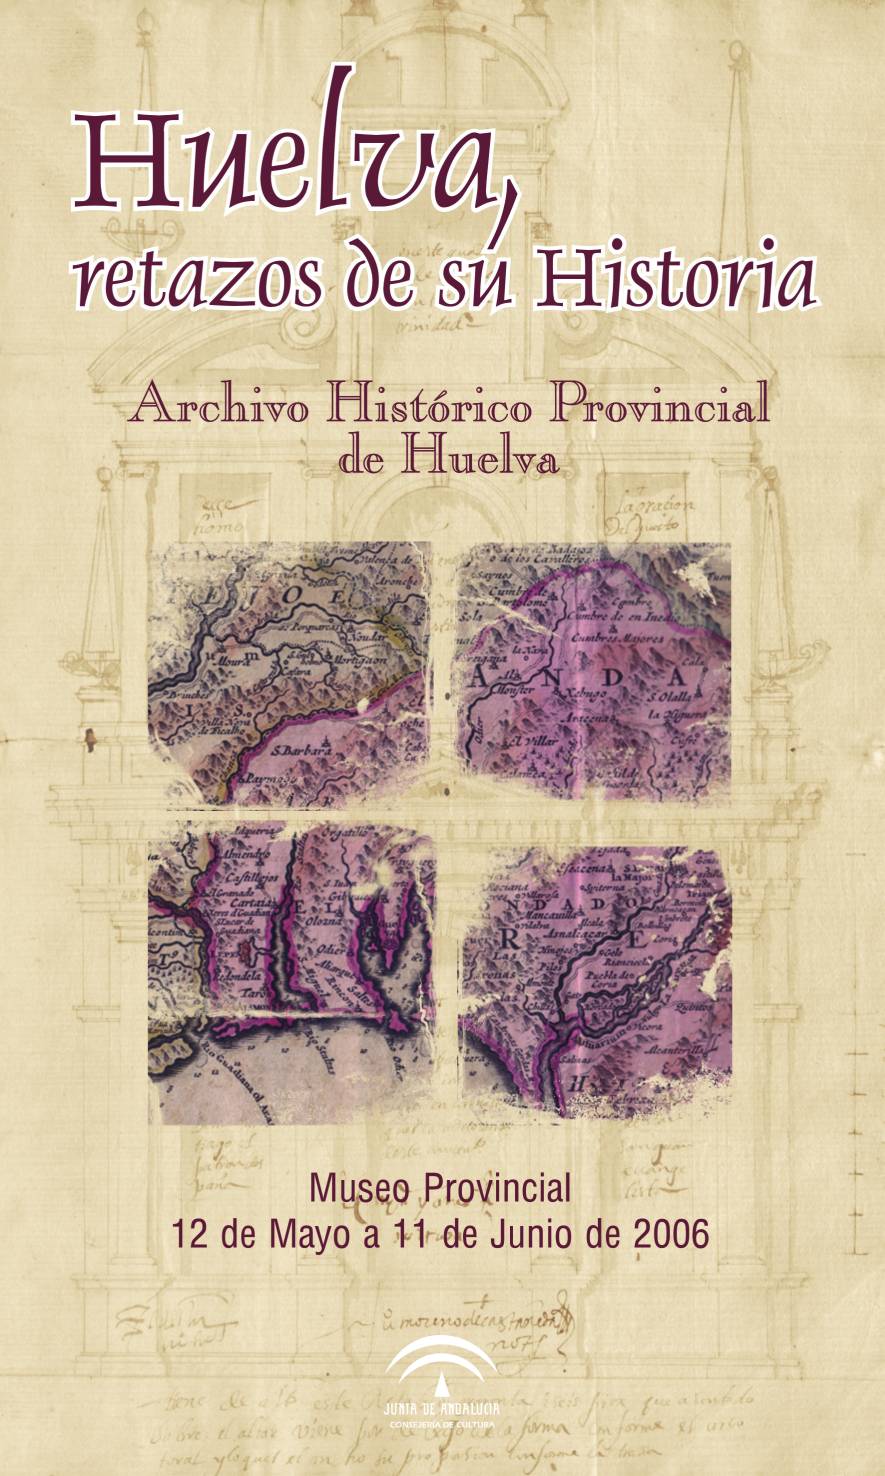 Huelva, retazos de su historia